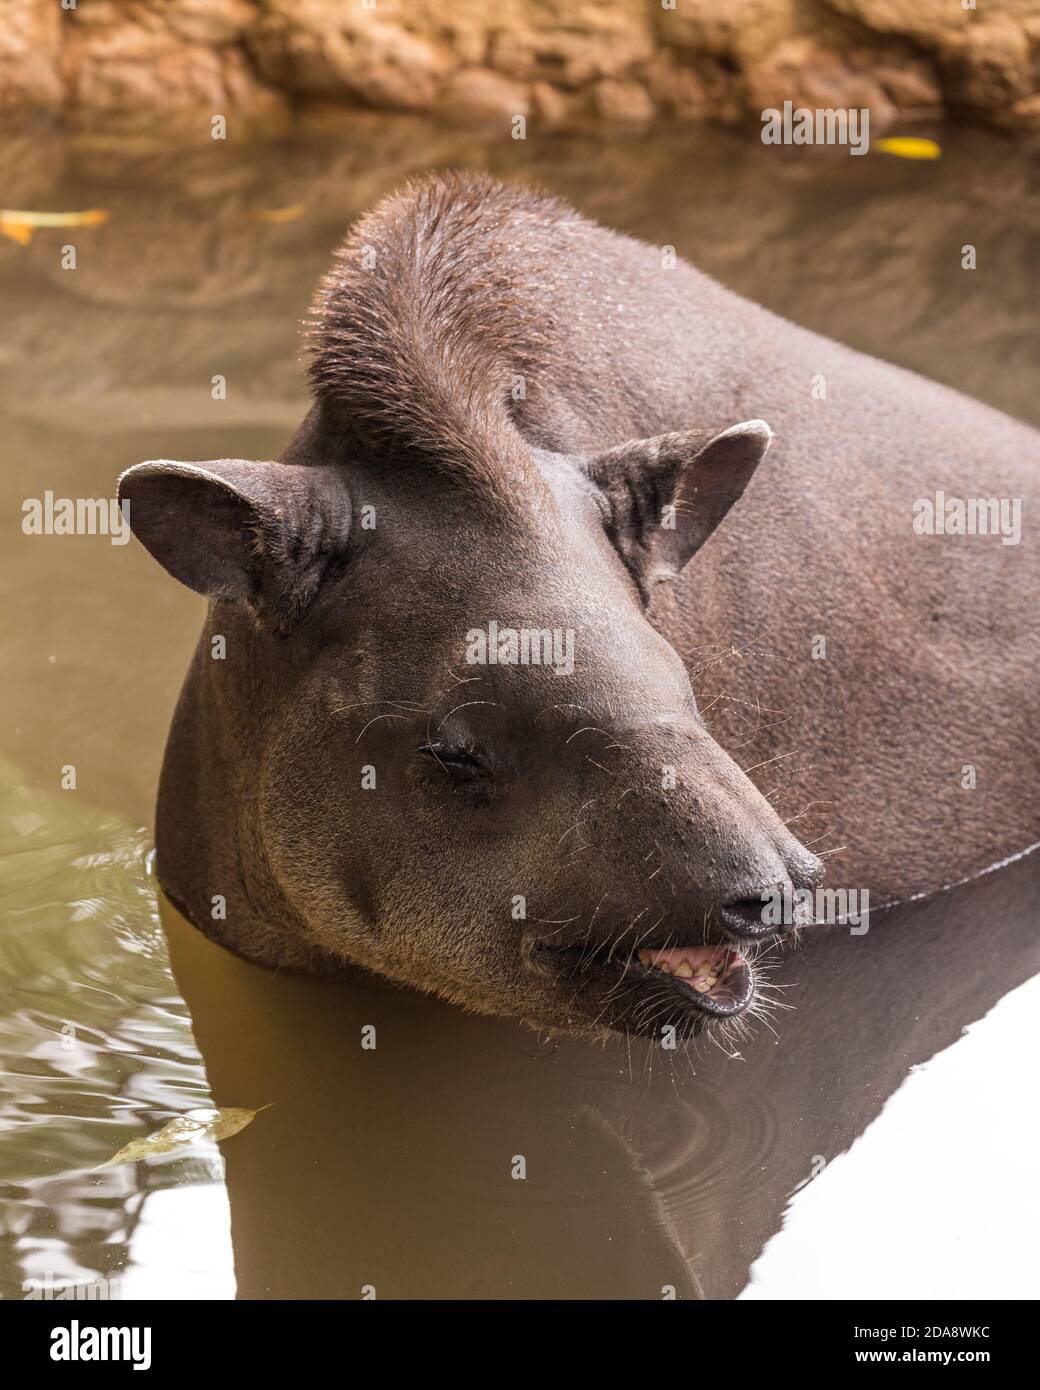 Le Tapir sud-américain, le Tapir brésilien ou le Tapir des basses terres, Tapirus terrestris, est le plus grand mammifère terrestre indigène de l'Amazonie. Illustré ici s Banque D'Images